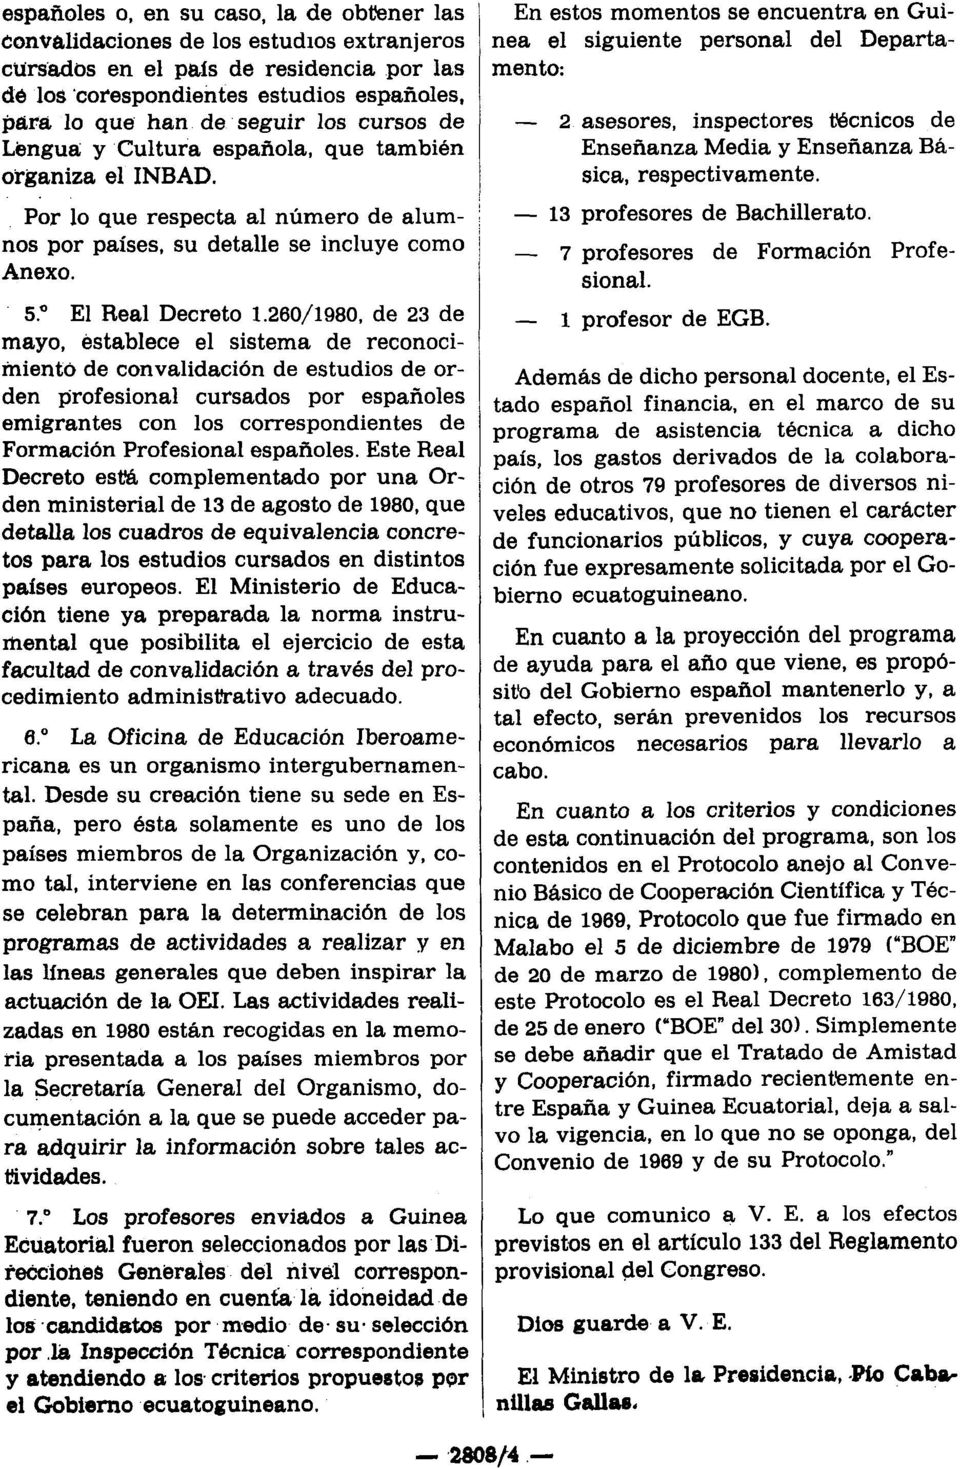 260/1980, de 23 de mayo, establece el sistema de reconocimiento de convalidación de estudios de orden profesional cursados por españoles emigrantes con los correspondientes de Formación Profesional